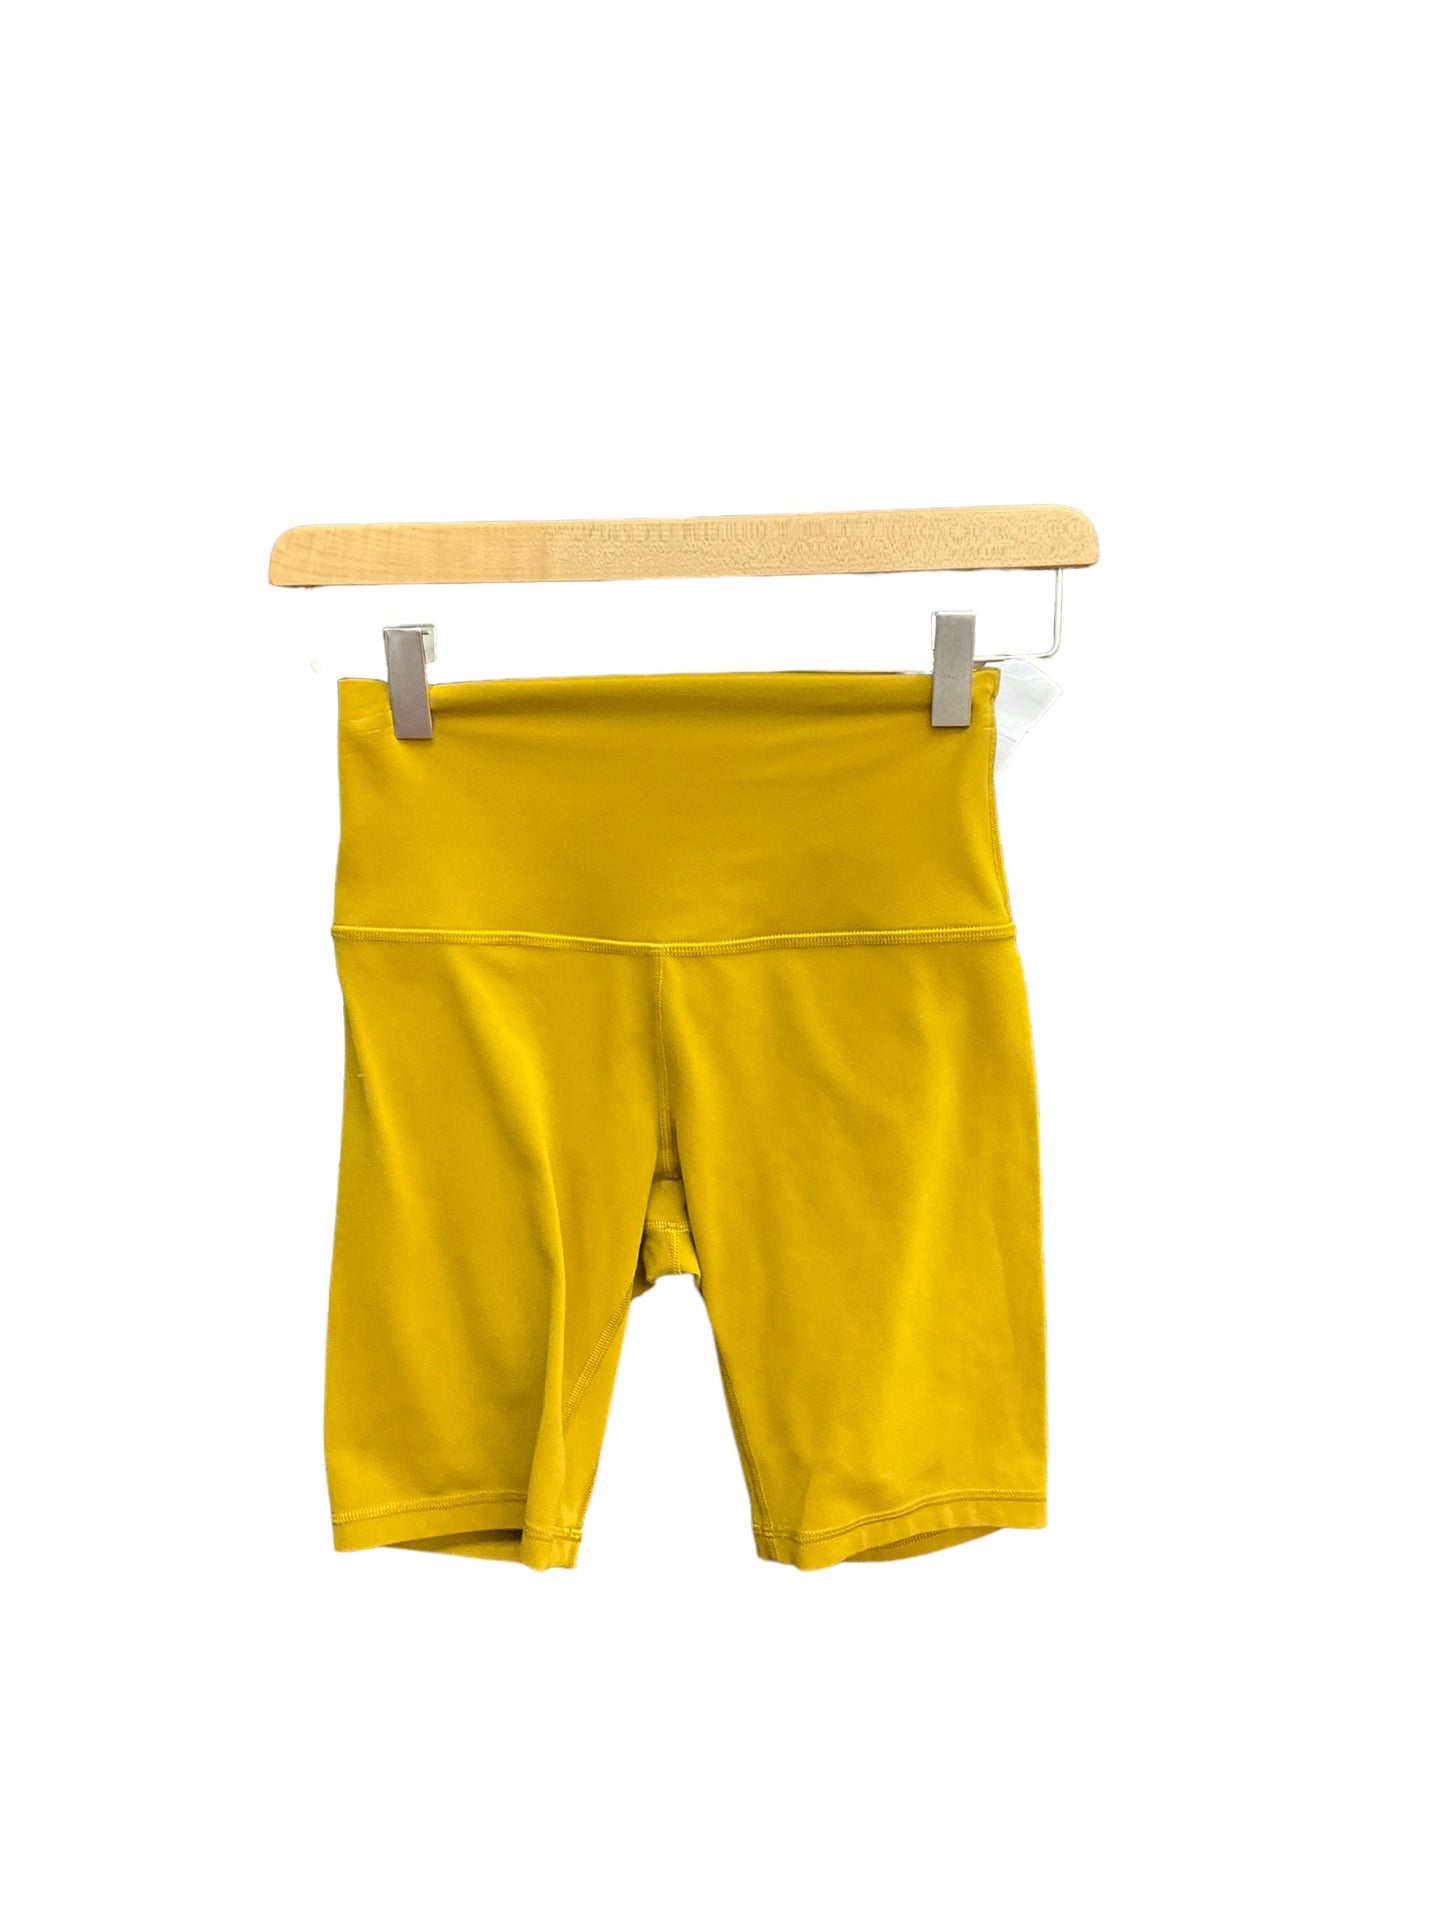 Yellow Athletic Shorts Lululemon, Size S